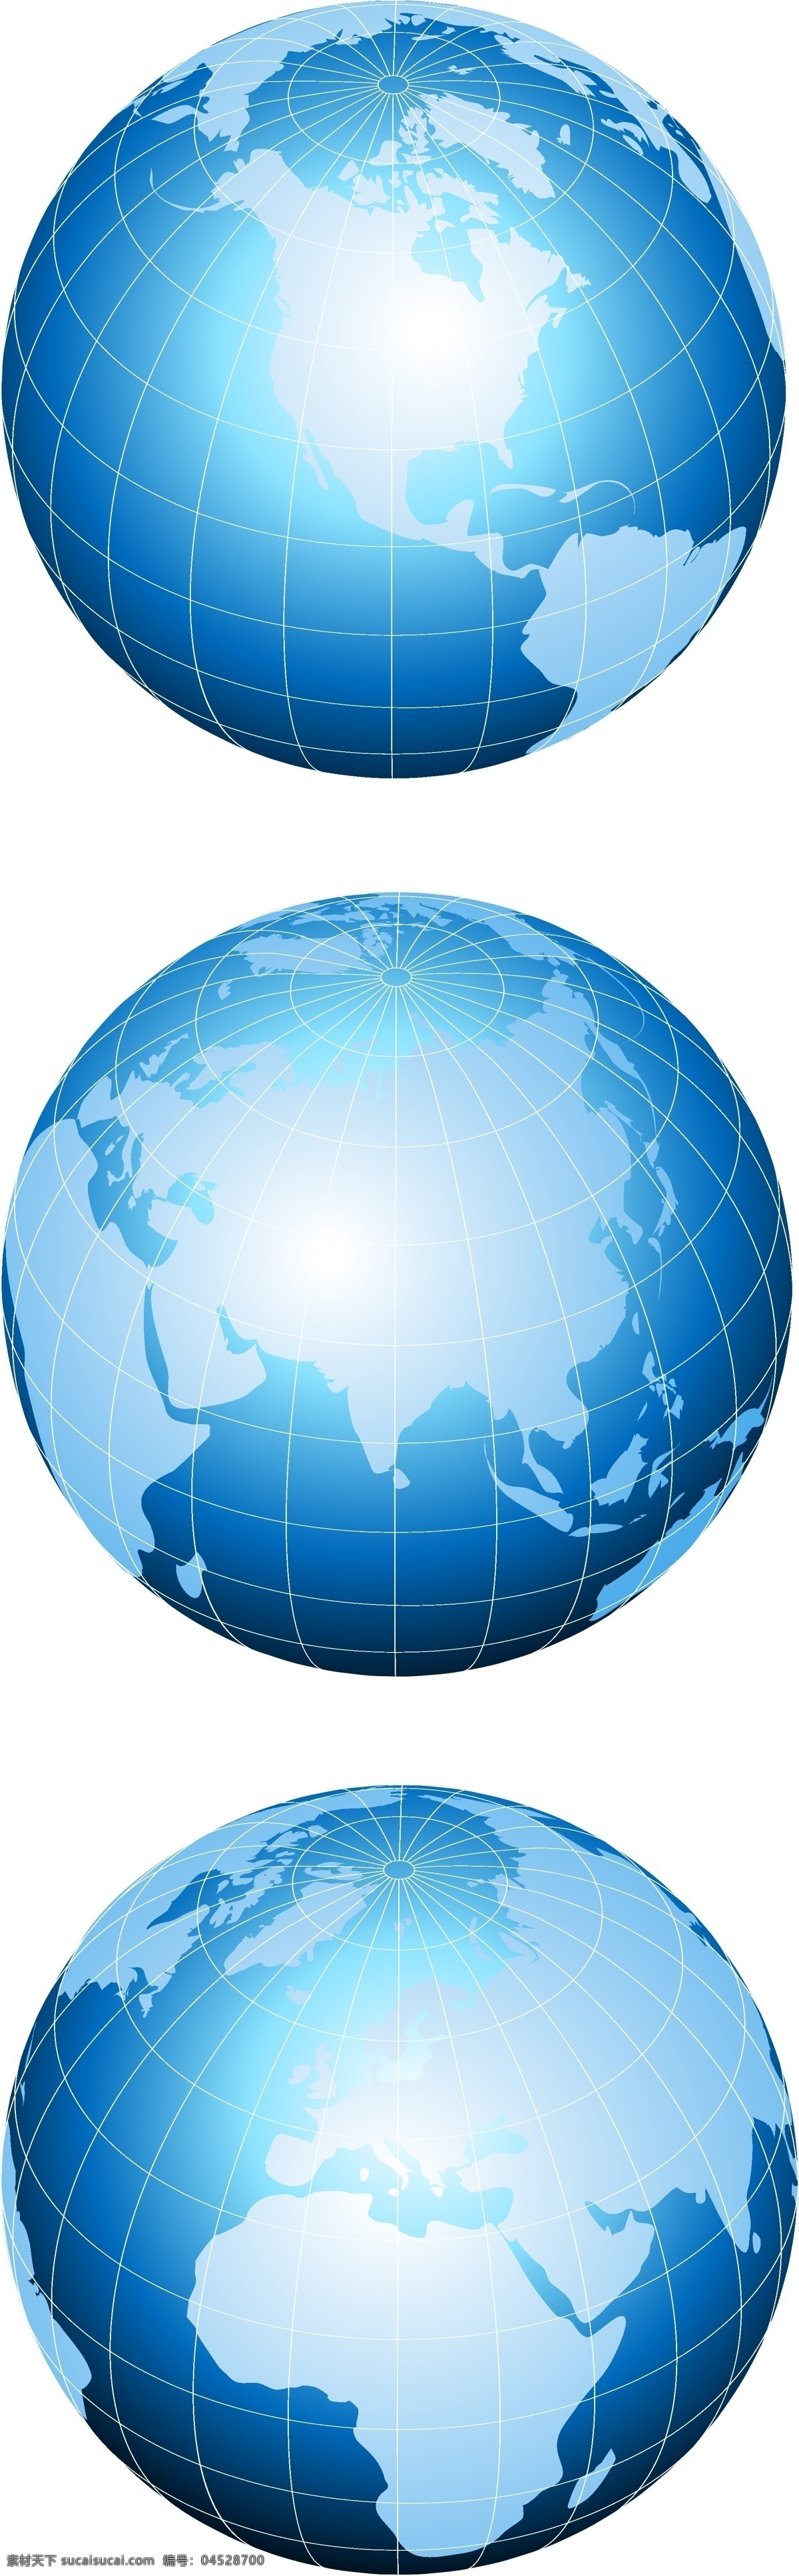 地球 地球素材 蓝色地球 宇宙 地球高清图 地球图片 源文件 三 地球标志 地球背景 矢量素材 其他矢量 矢量